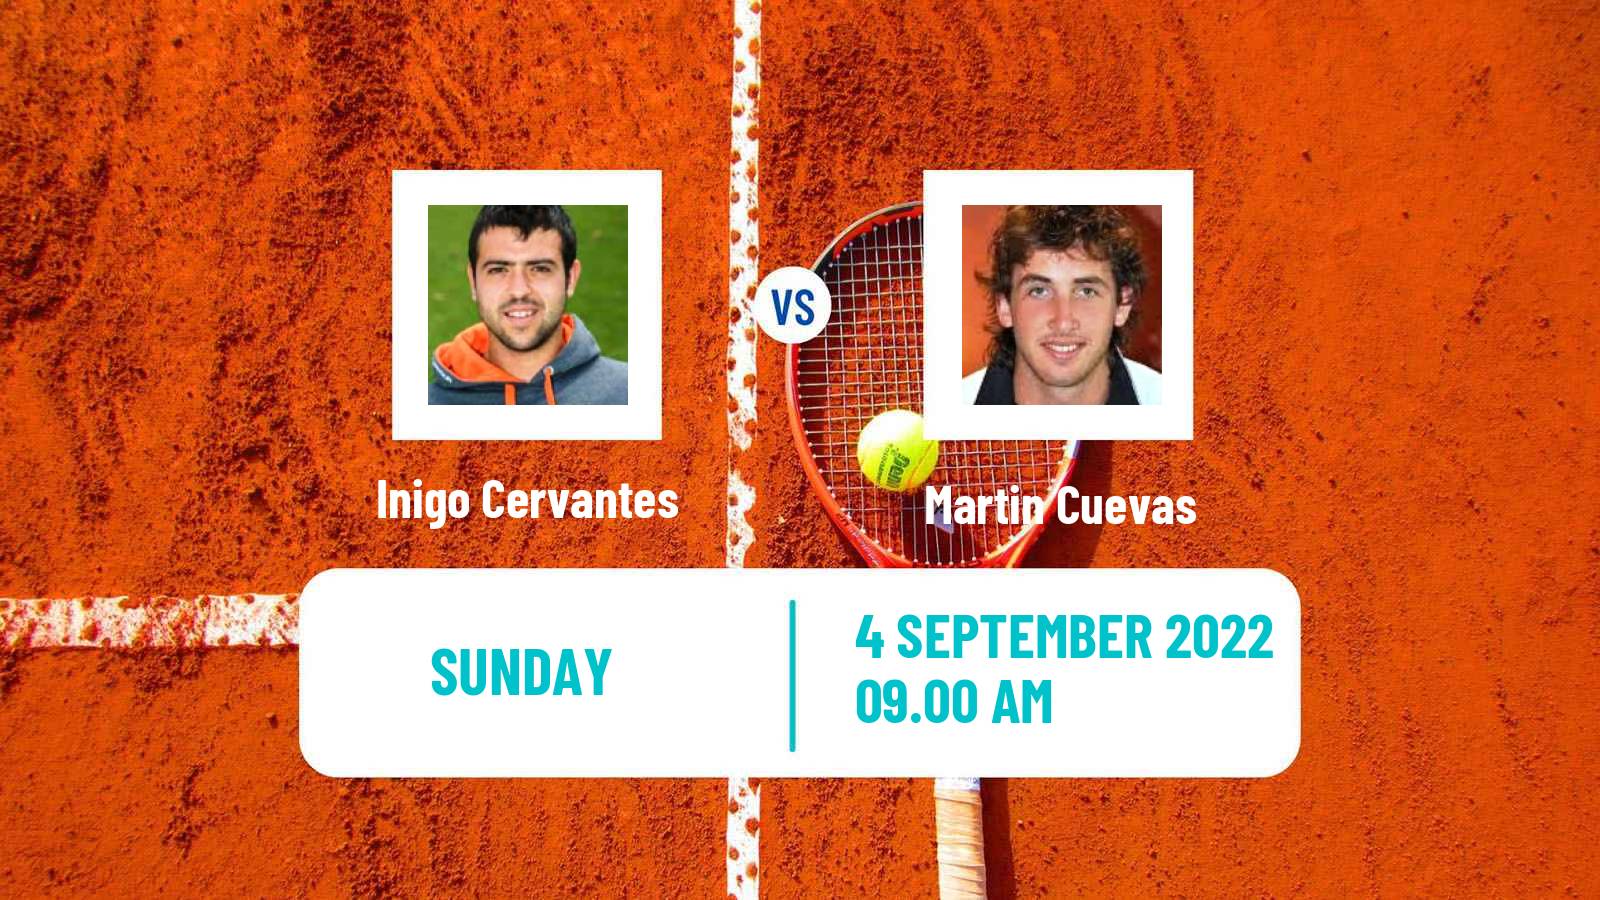 Tennis ATP Challenger Inigo Cervantes - Martin Cuevas